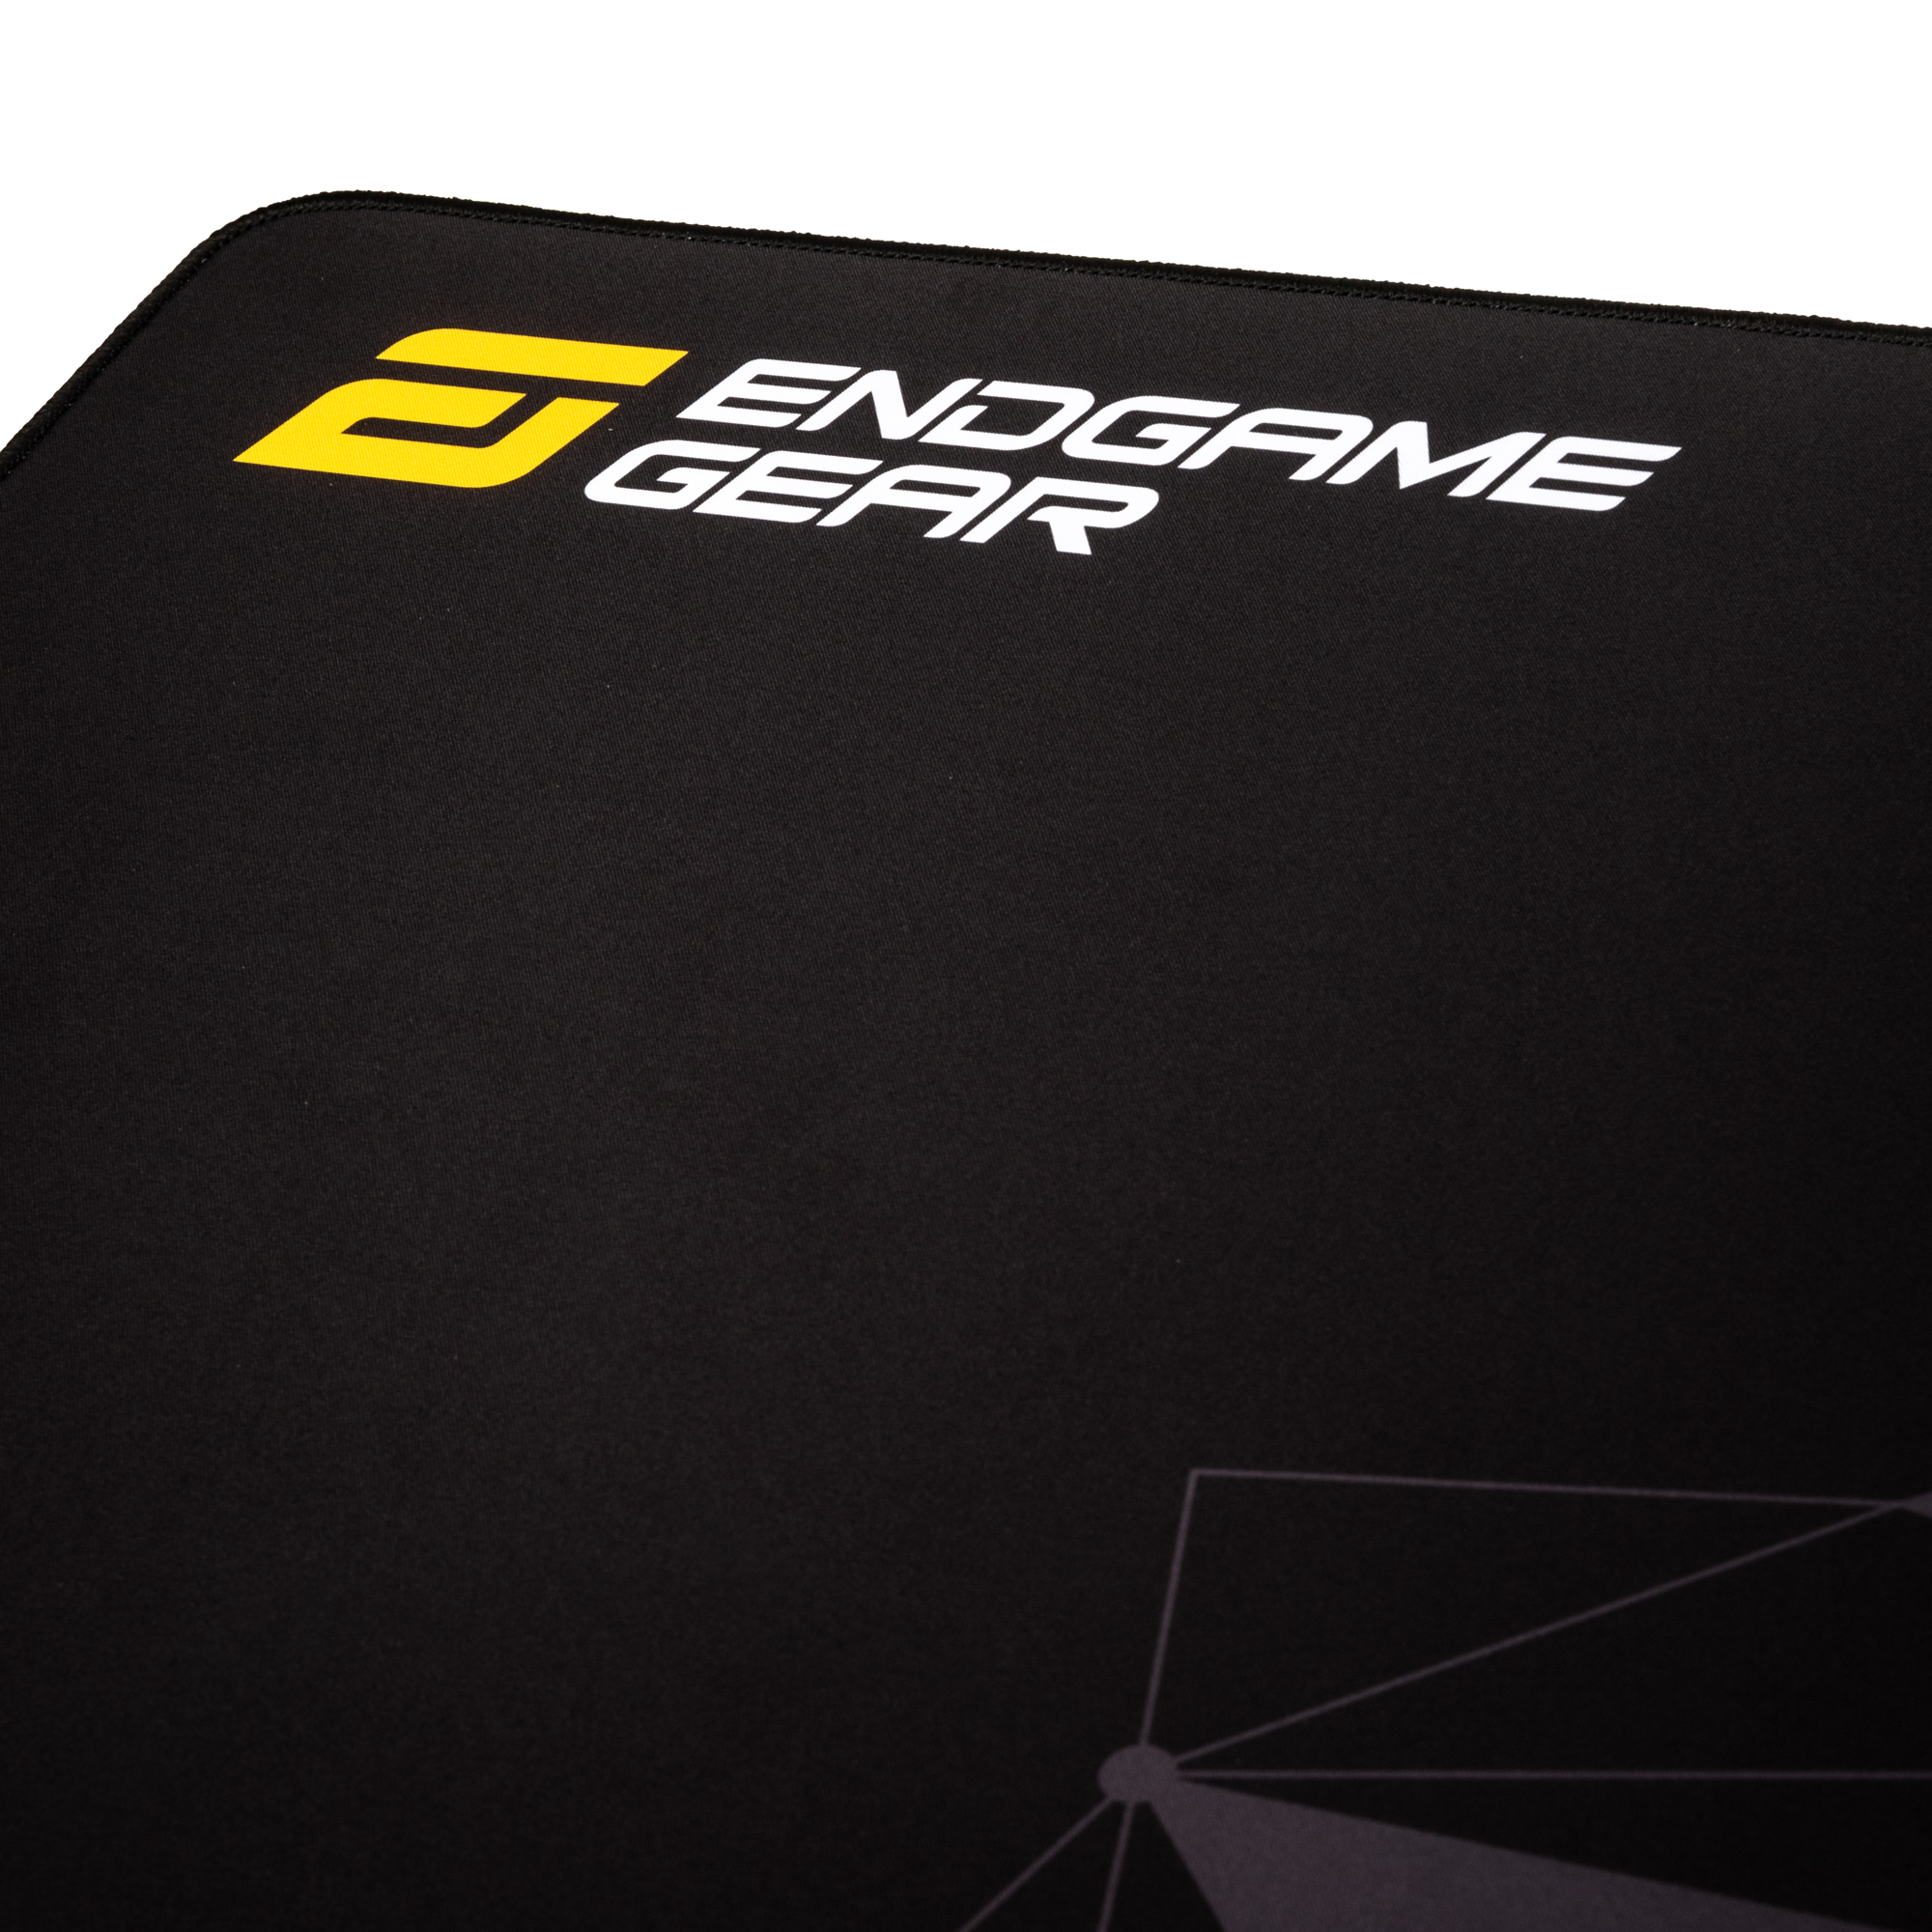 Endgame Gear - Endgame Gear MPJ-1200 3XL Gaming Surface Stealth Black 1200x600x3mm